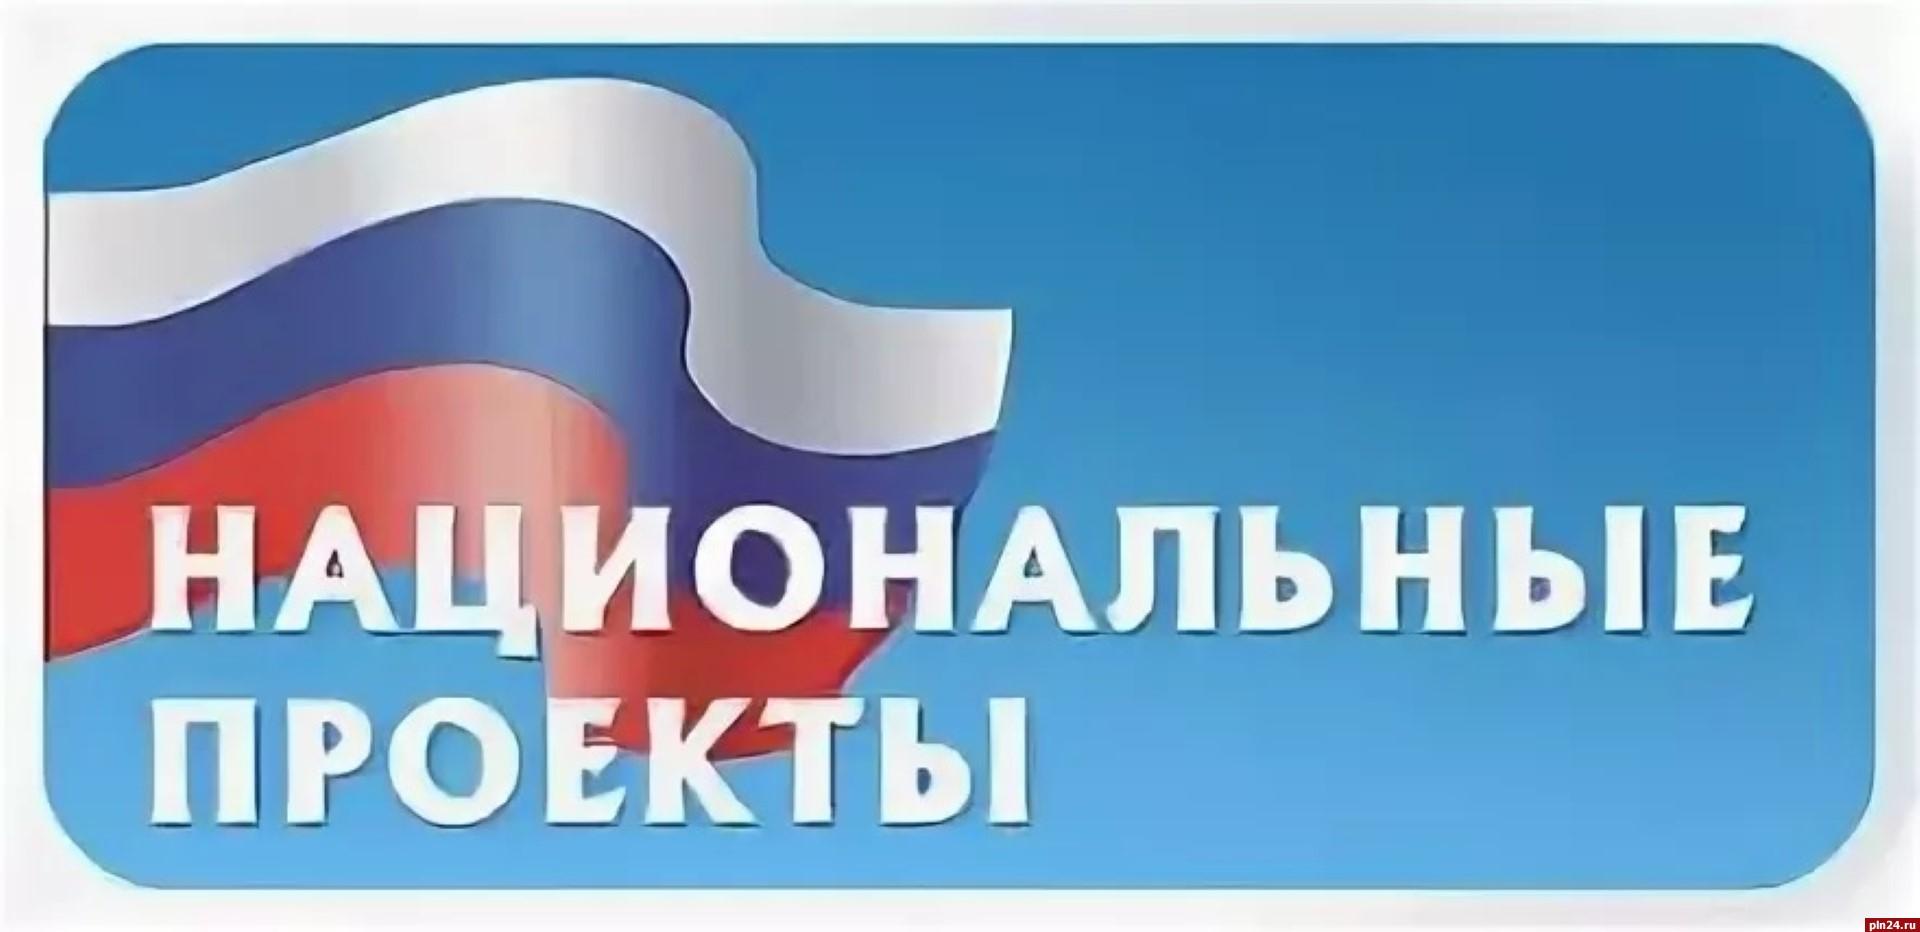 Администрация Большеберезниковского района информирует о получении бтизнесч-консультации..